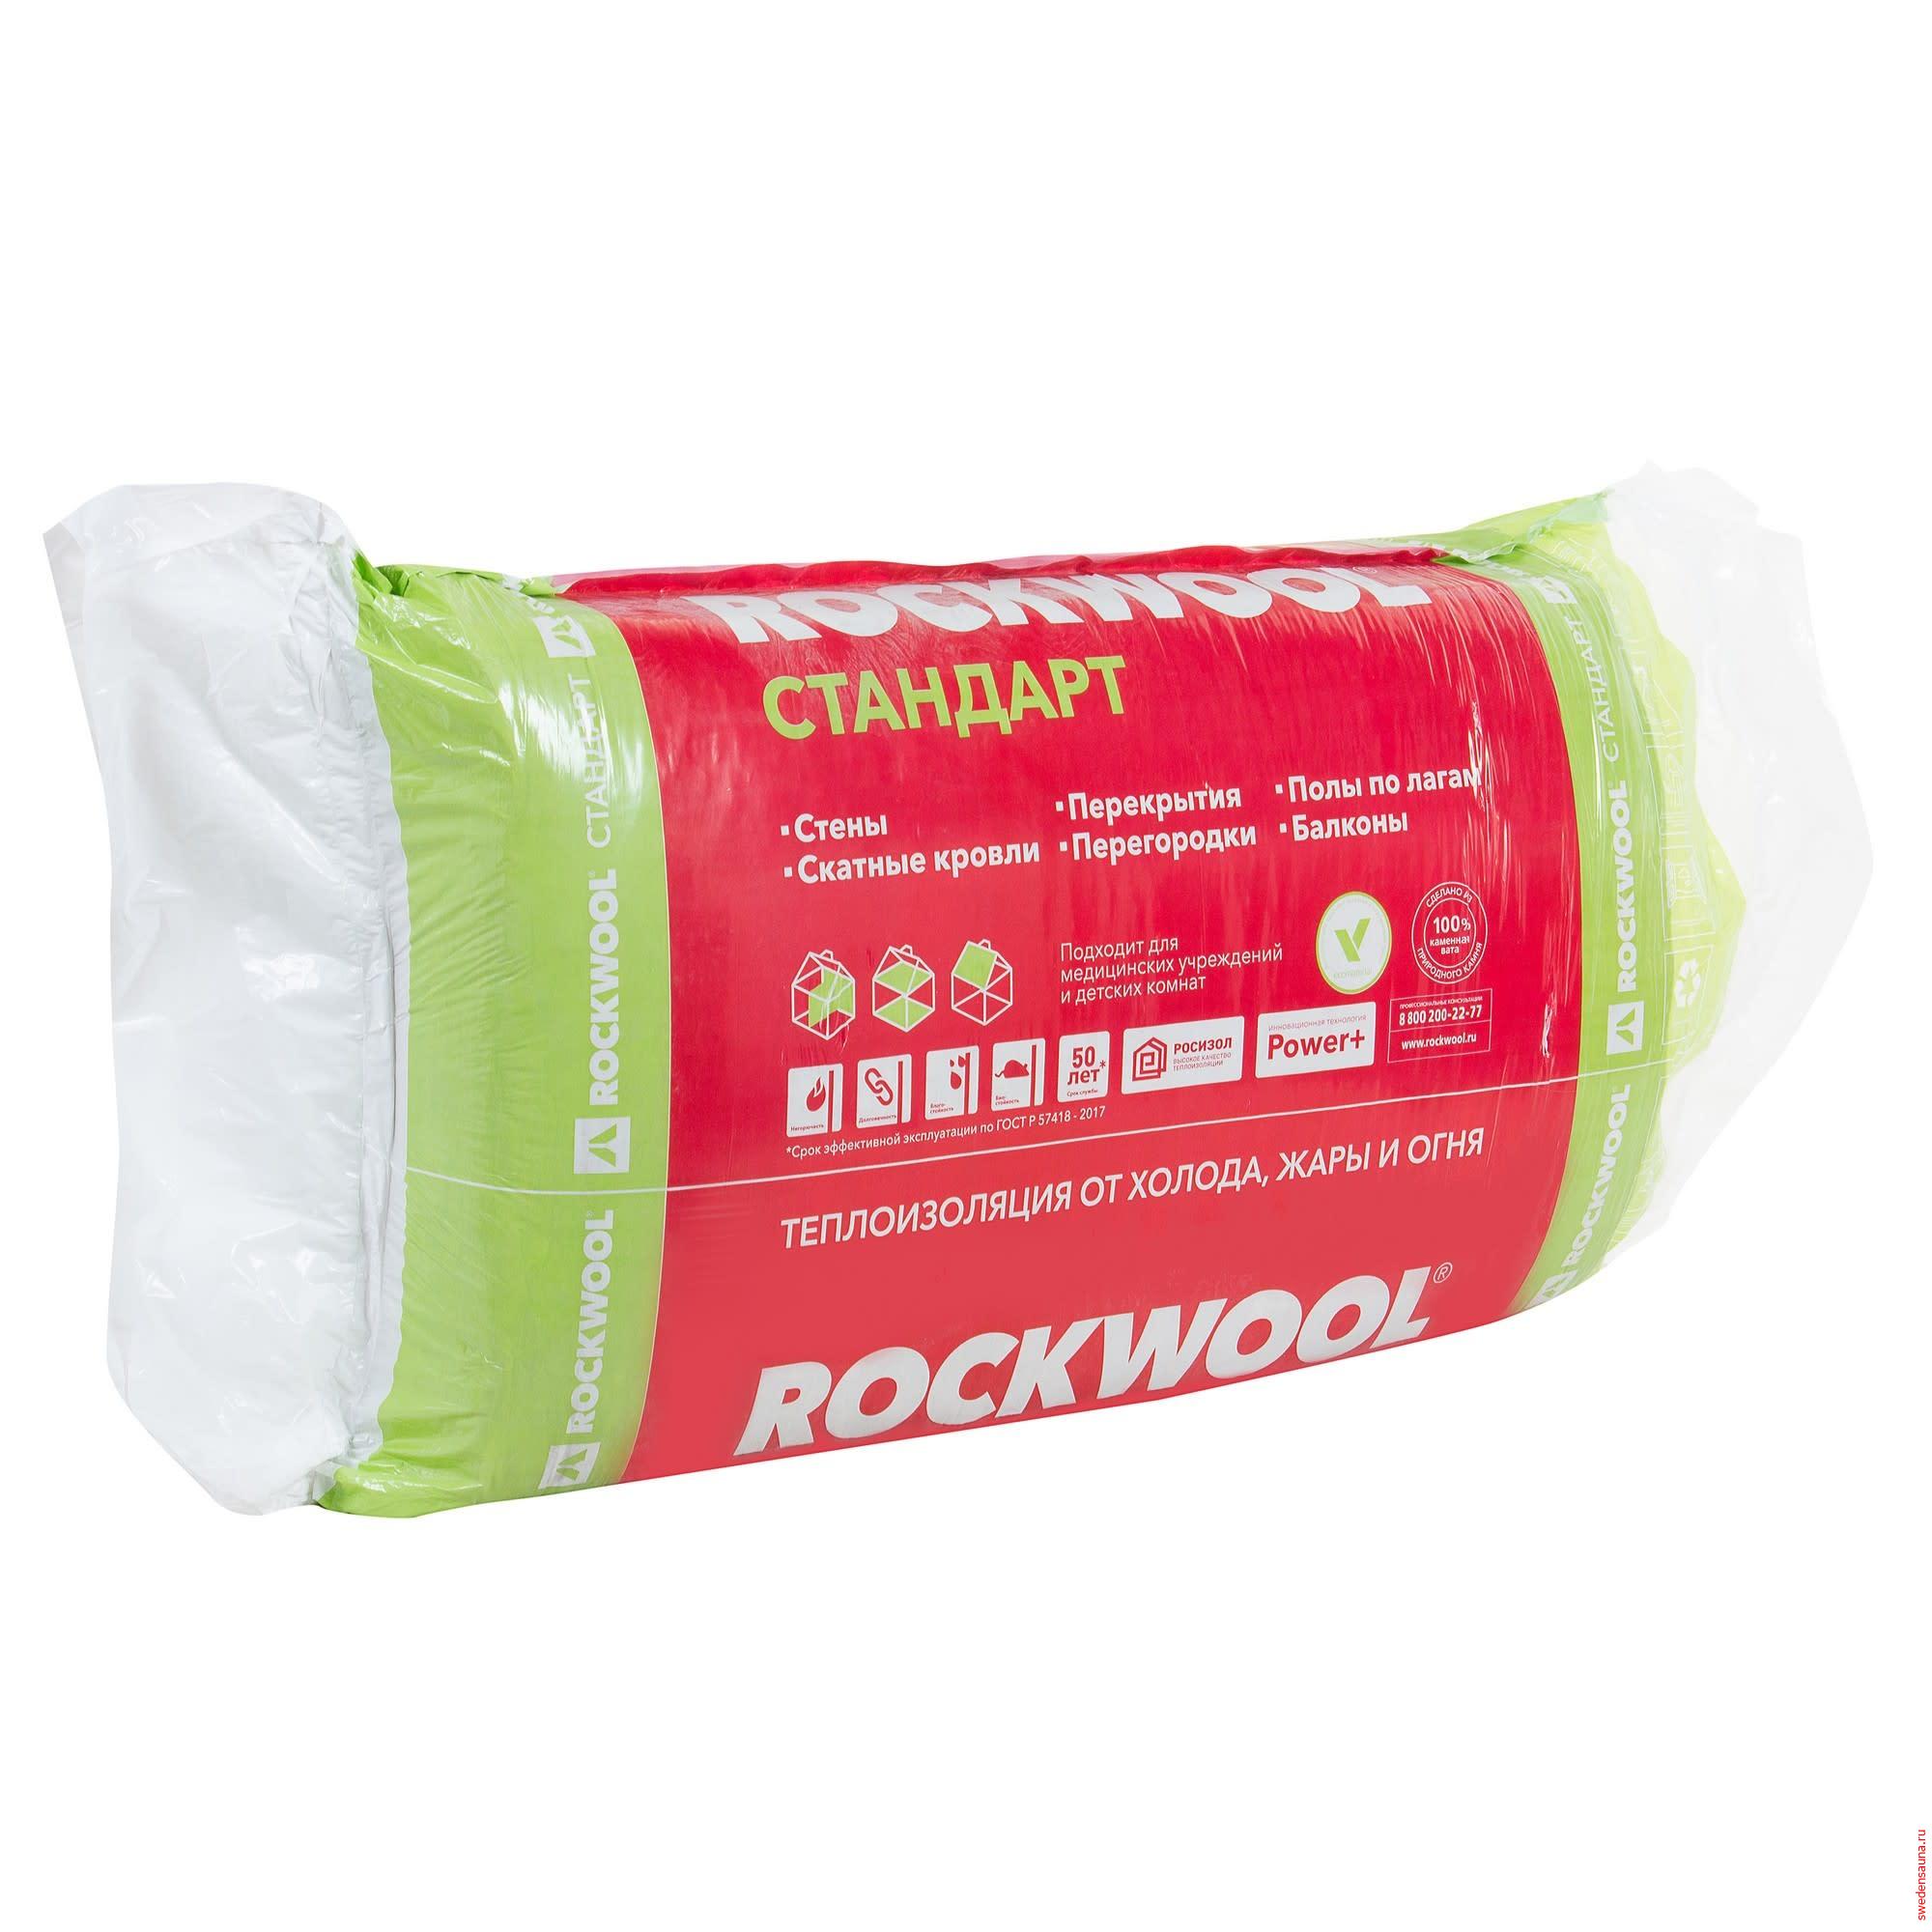 Rockwool Scandic - фото, описание, отзывы.